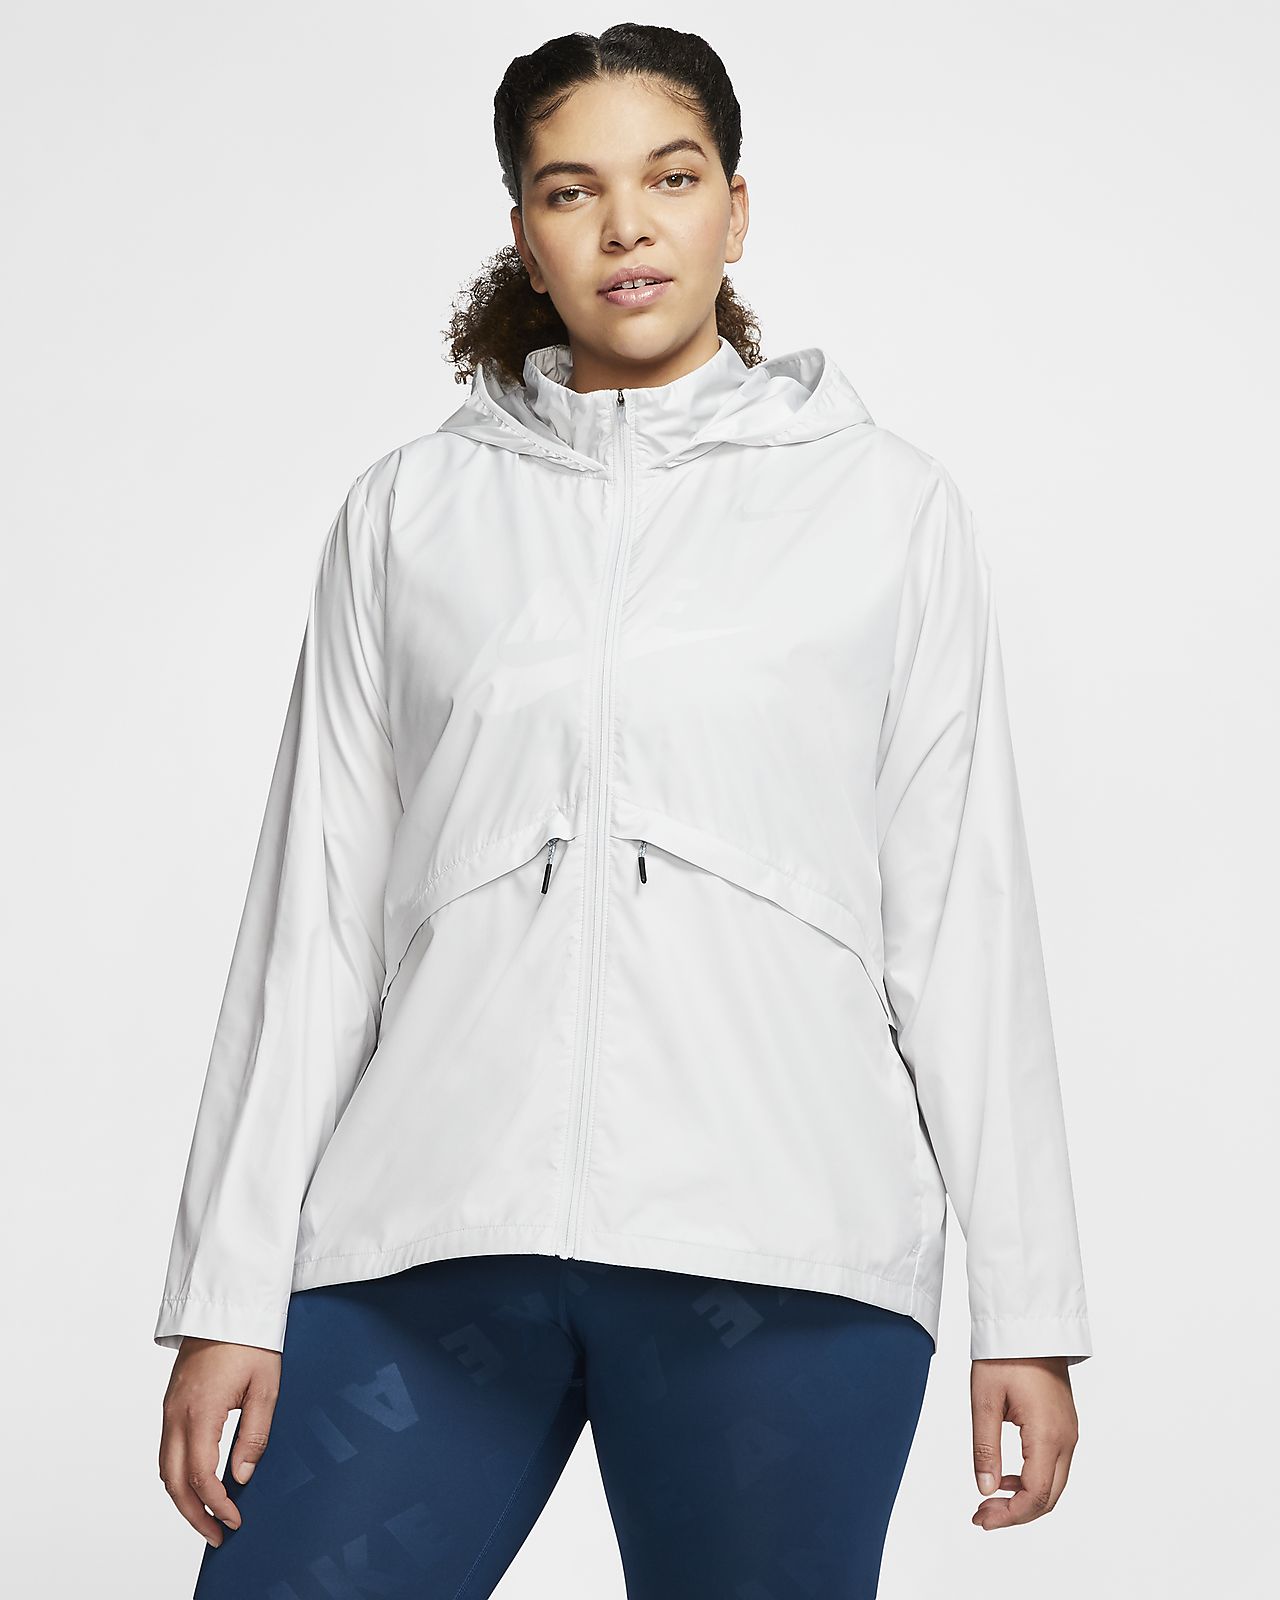 women's nike essential hooded running jacket